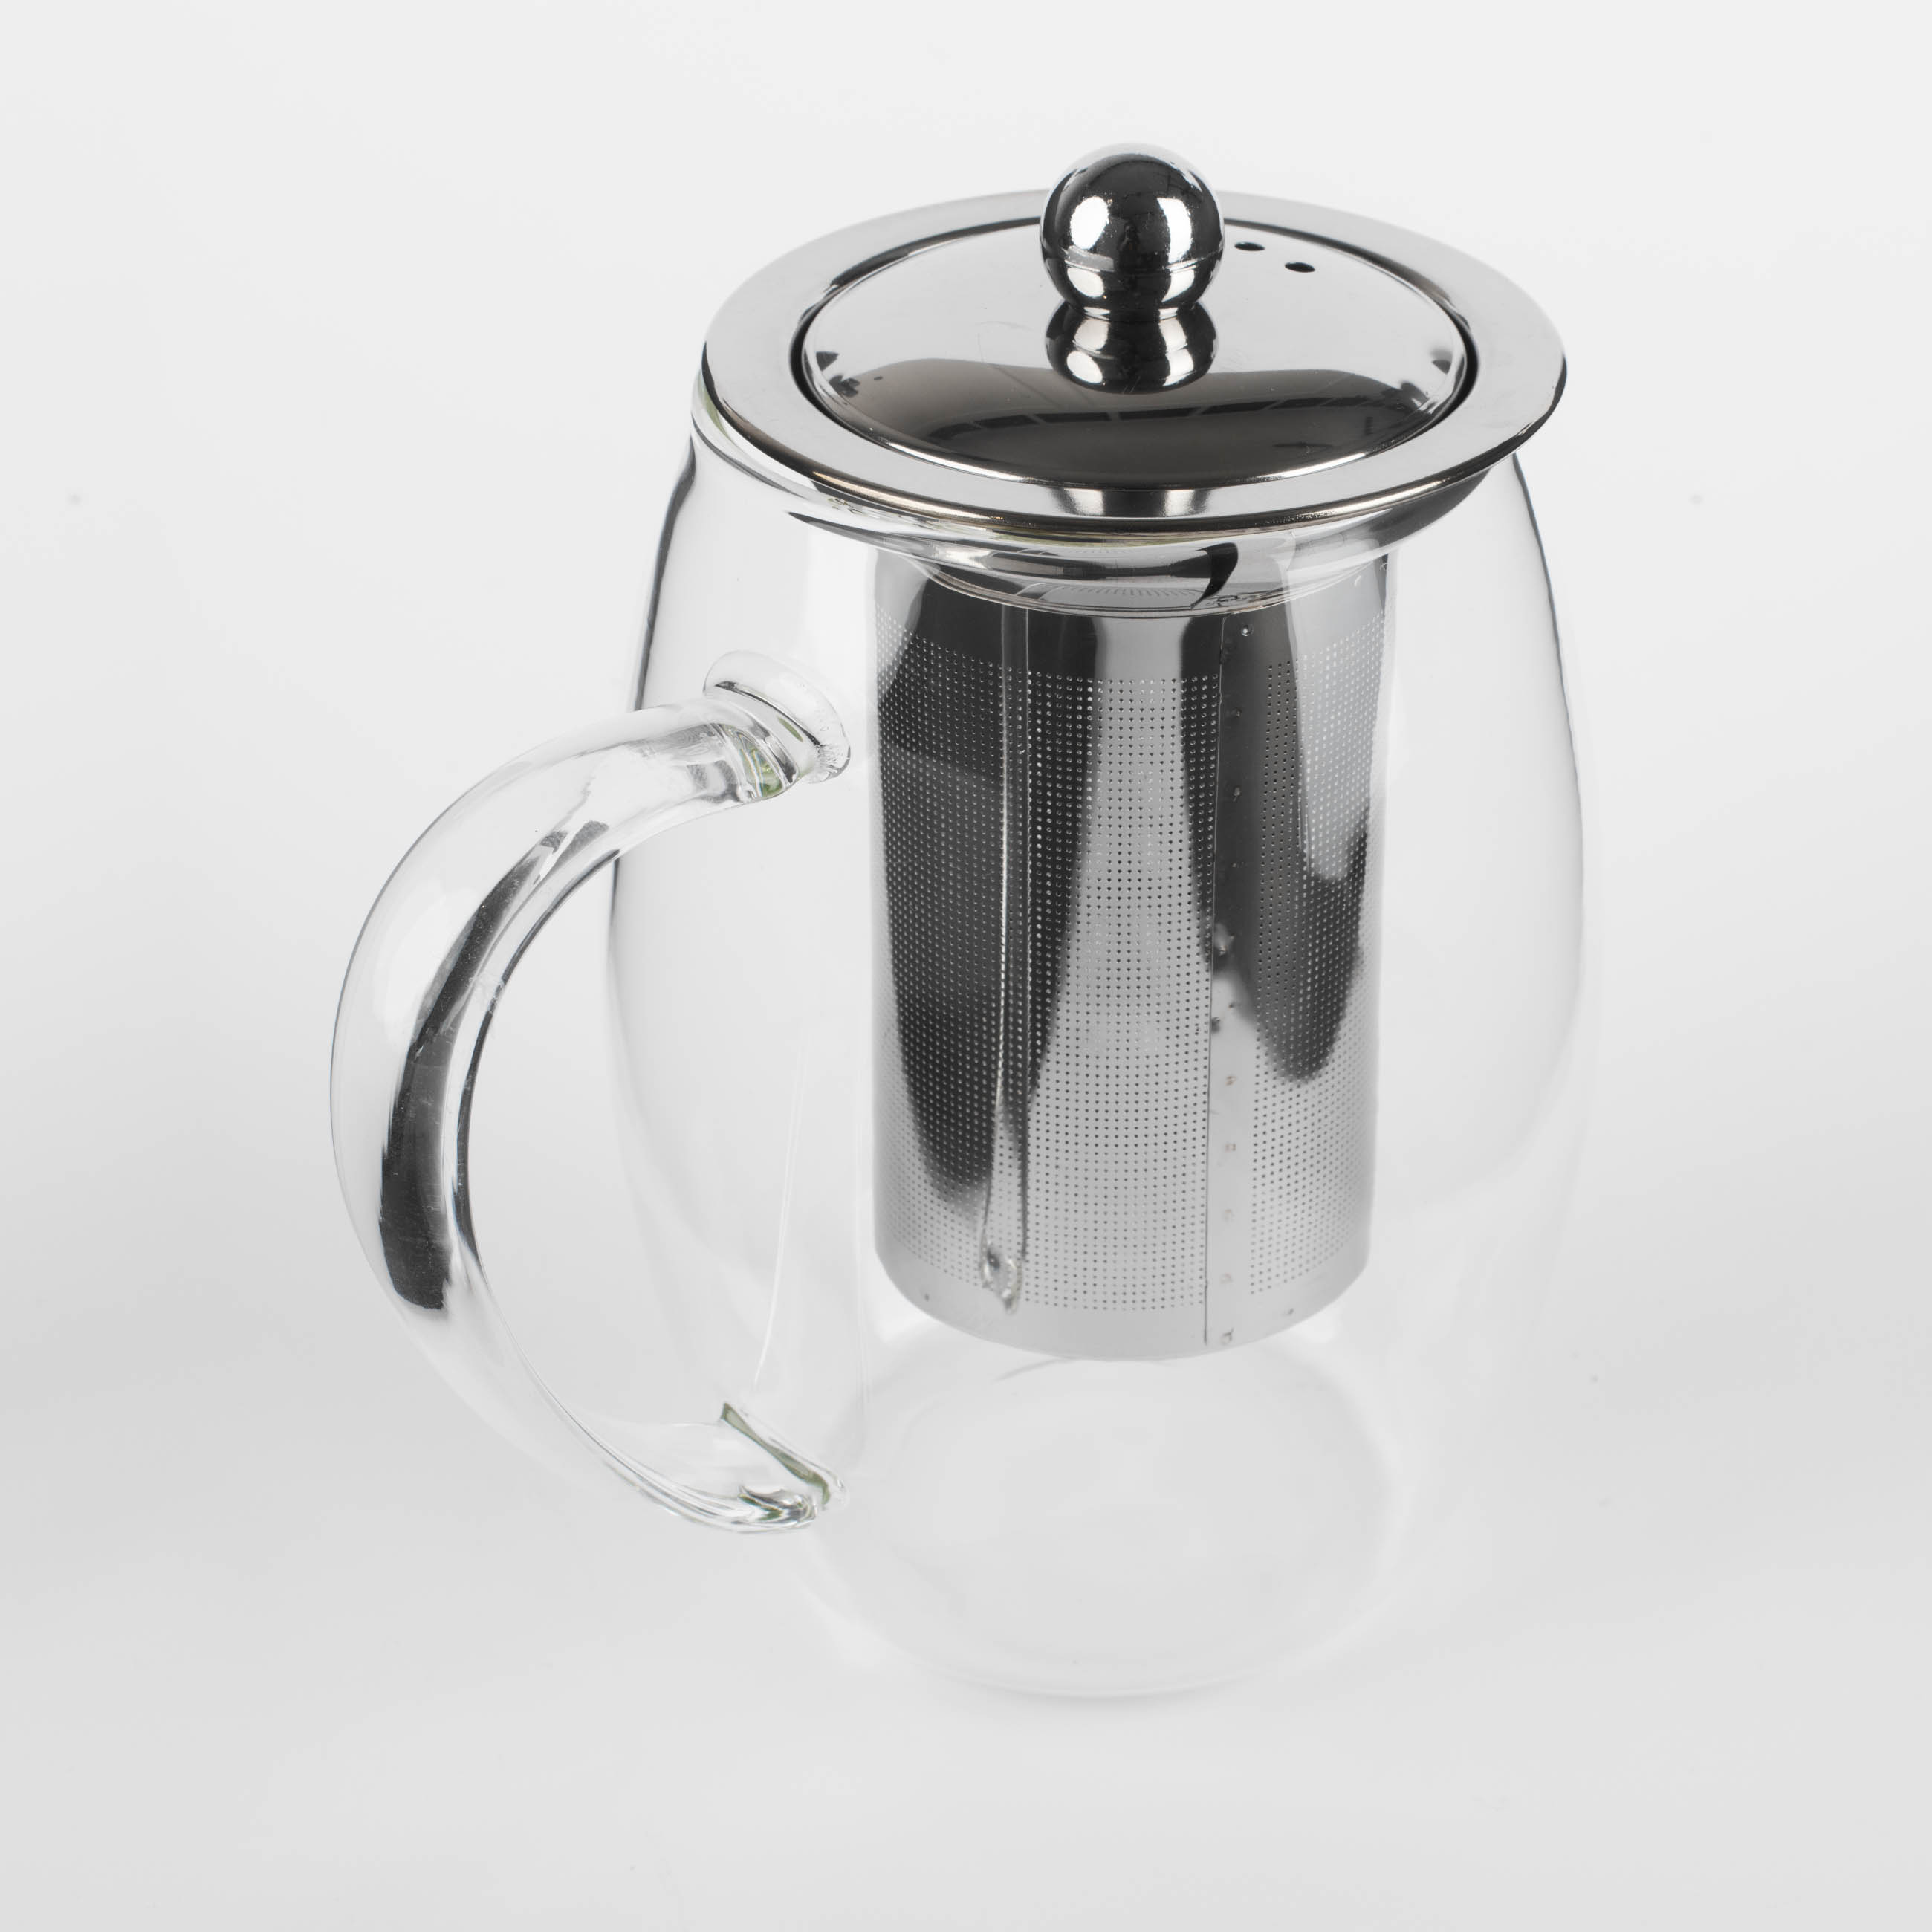 Teapot, 780 ml, used glass, Classic изображение № 2